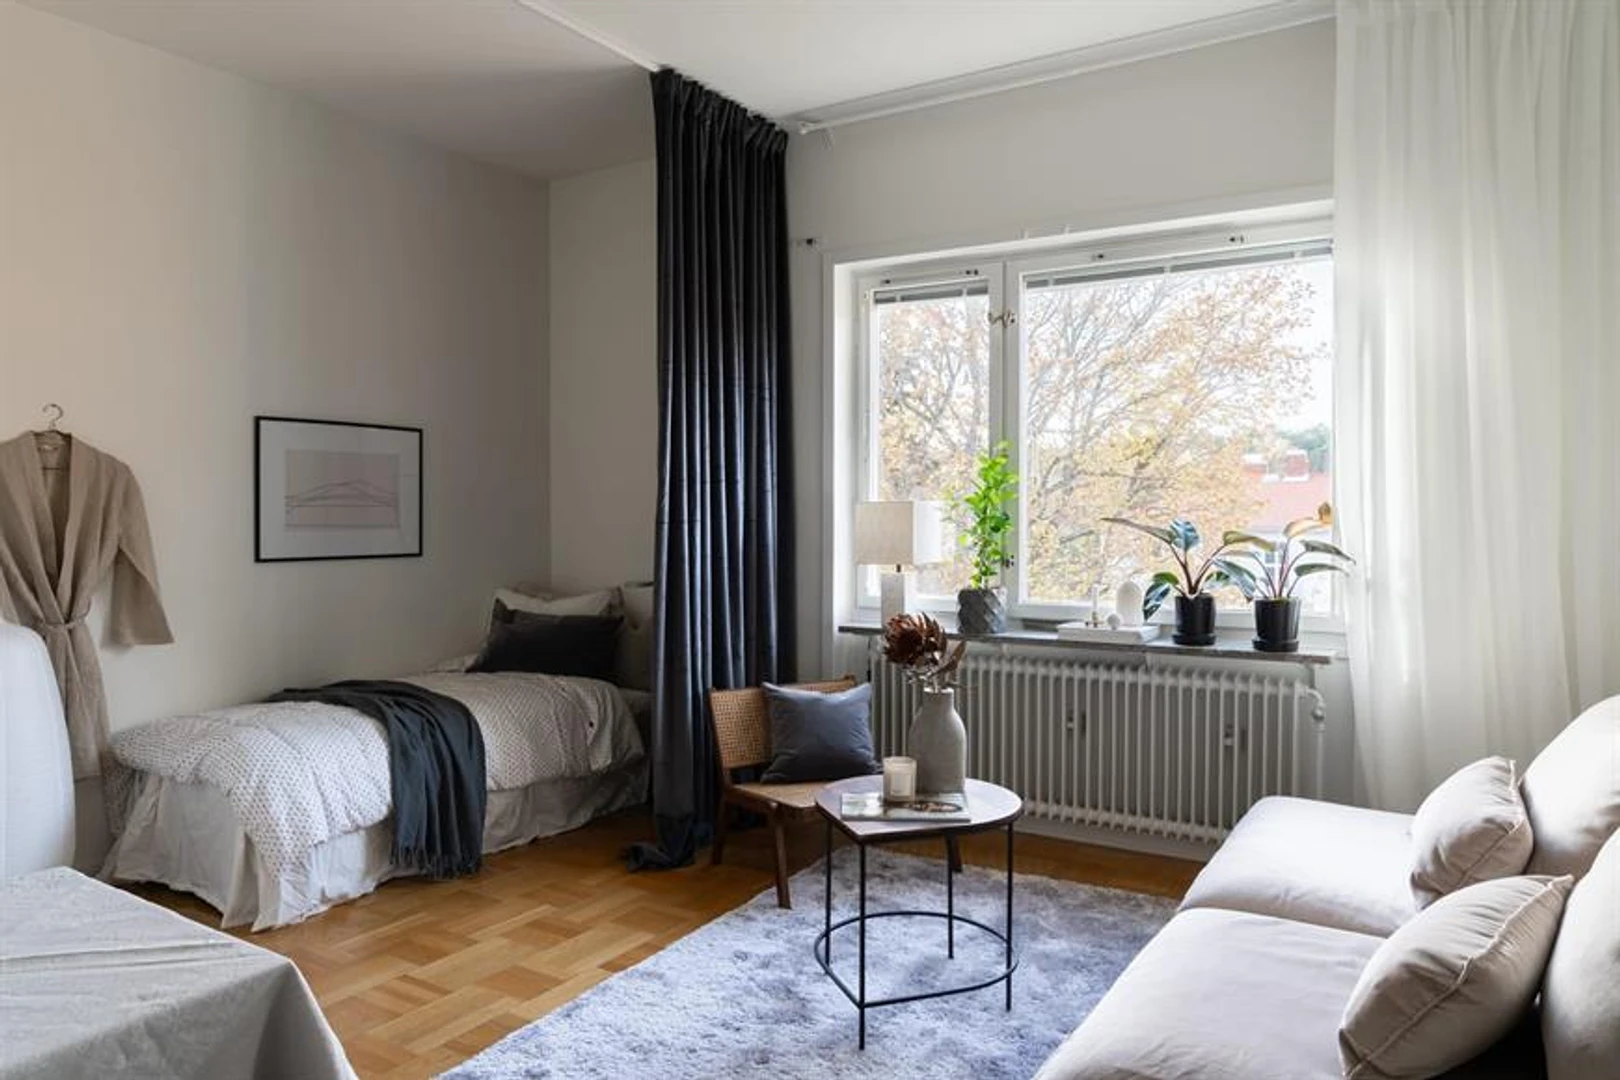 Alquiler de habitación en piso compartido en Uppsala